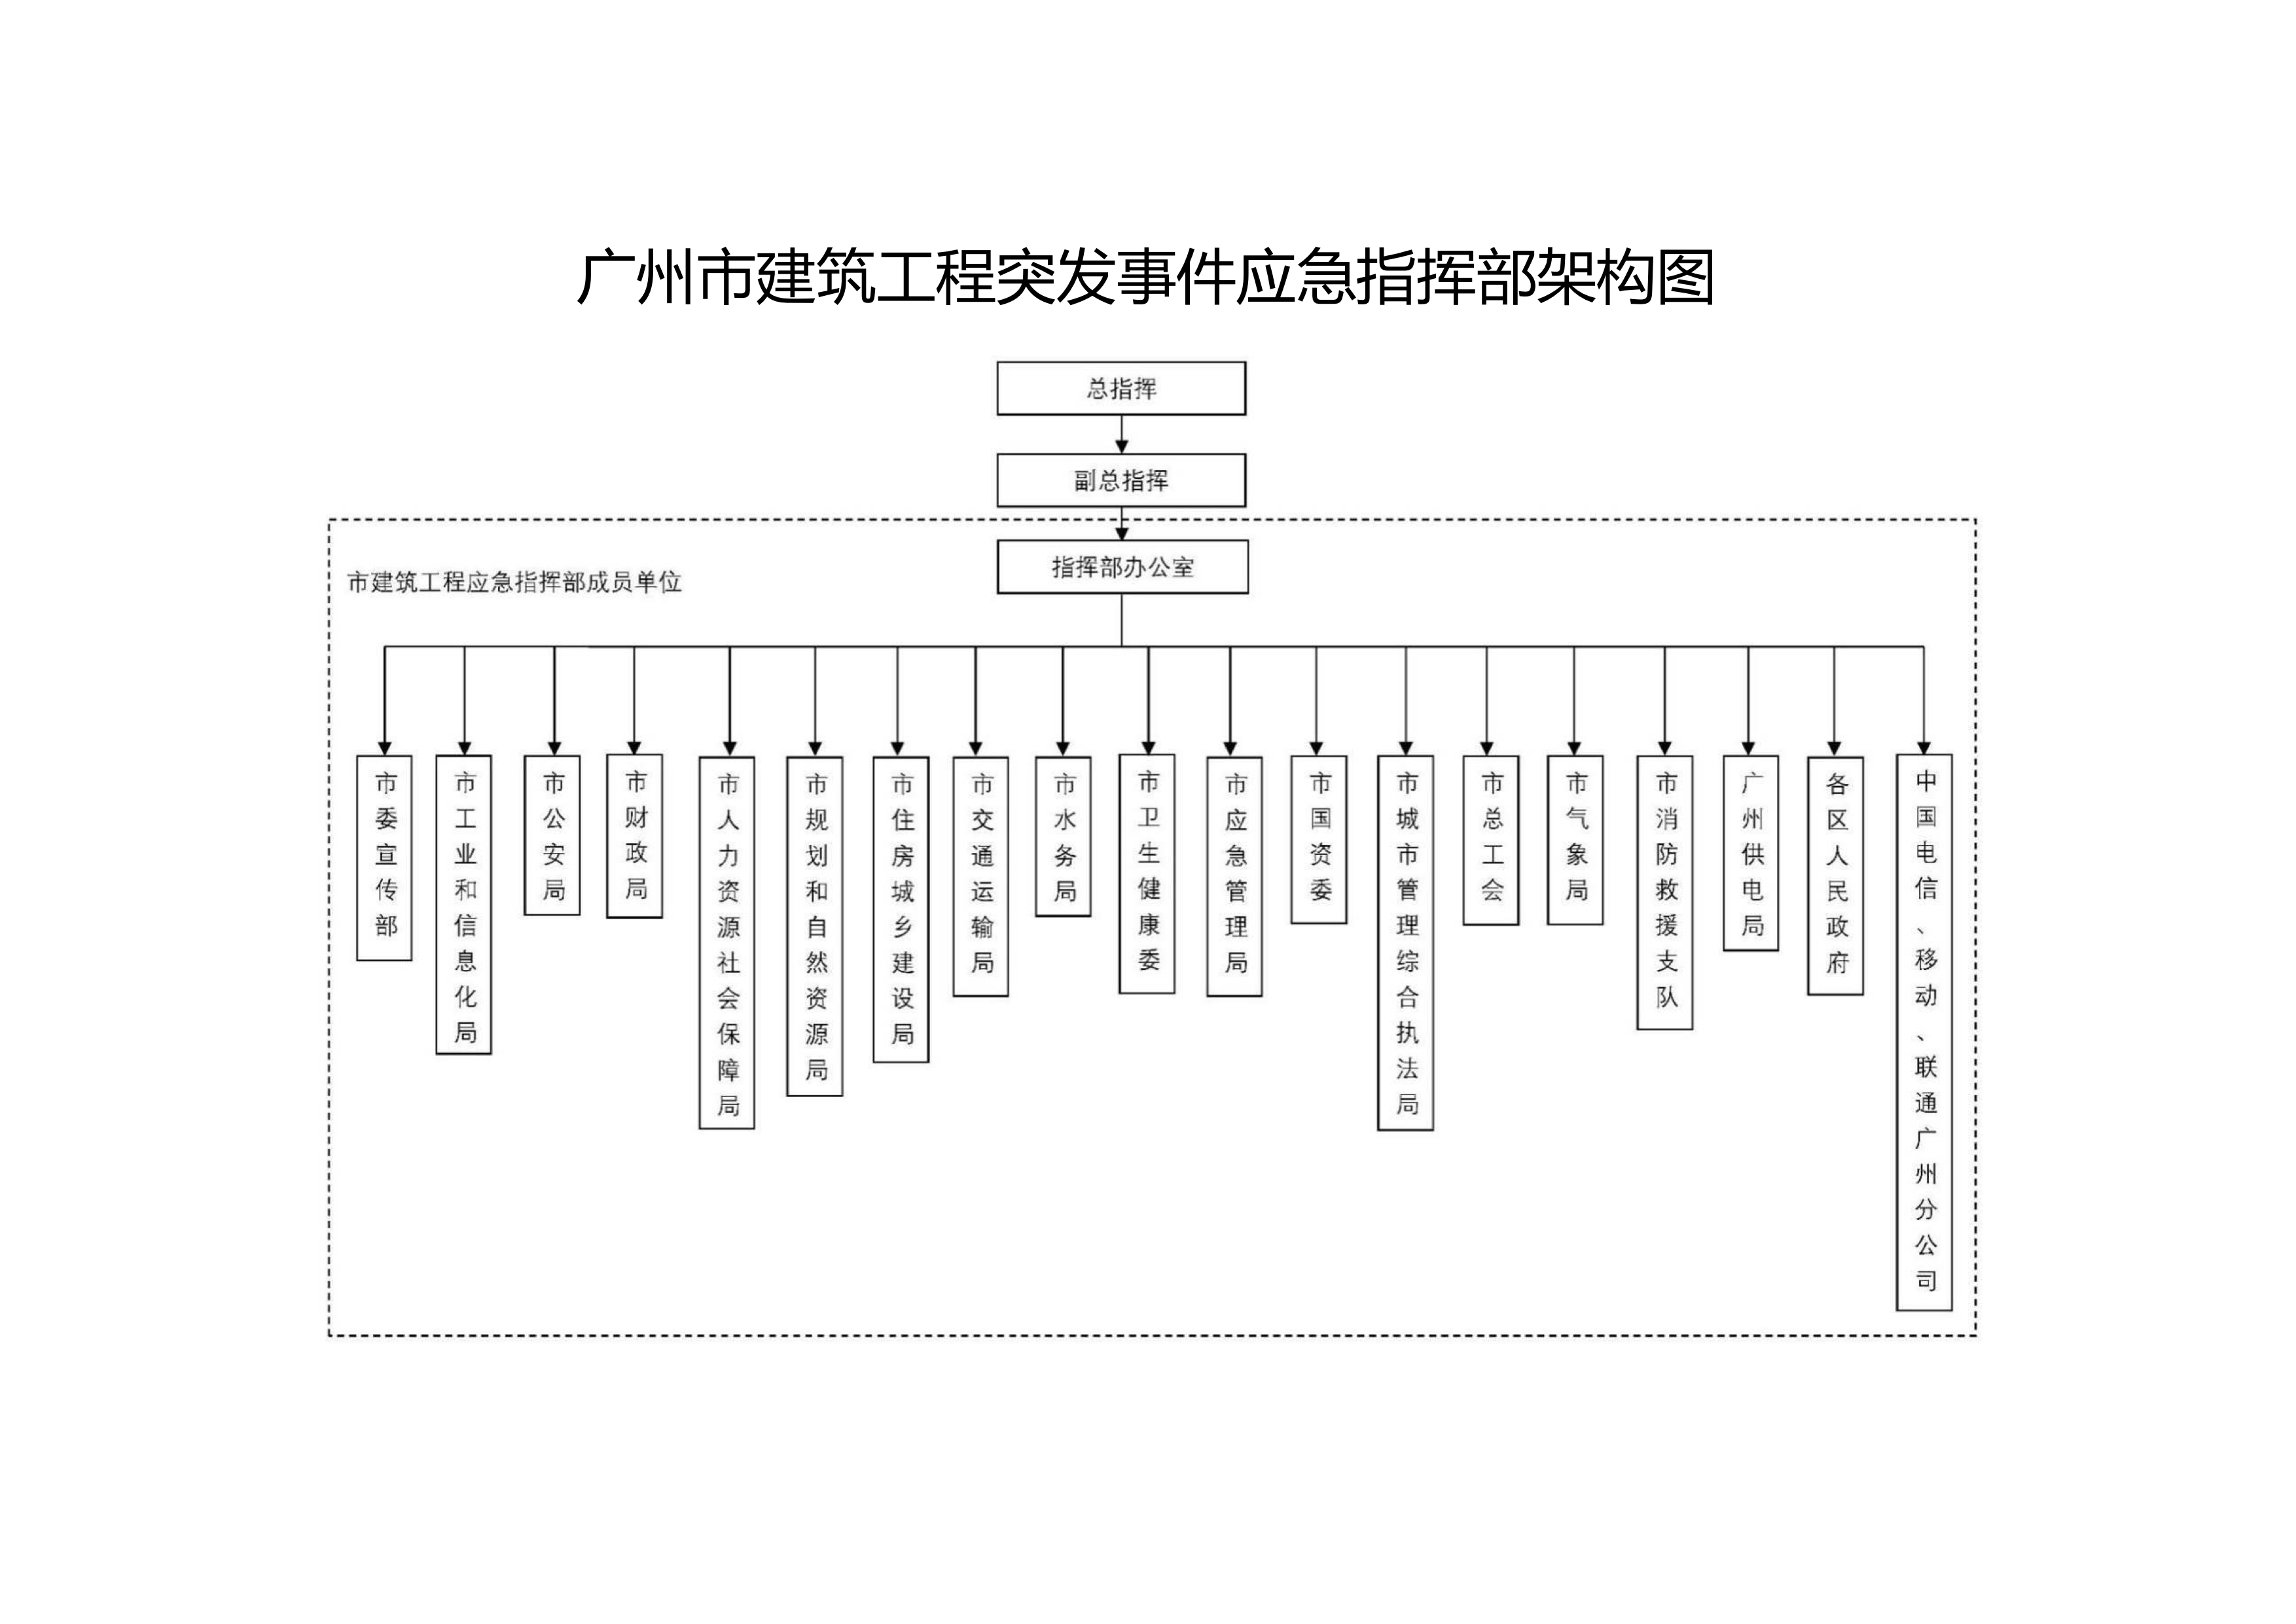 附件1广州市建筑工程突发事件应急指挥部架构图.png